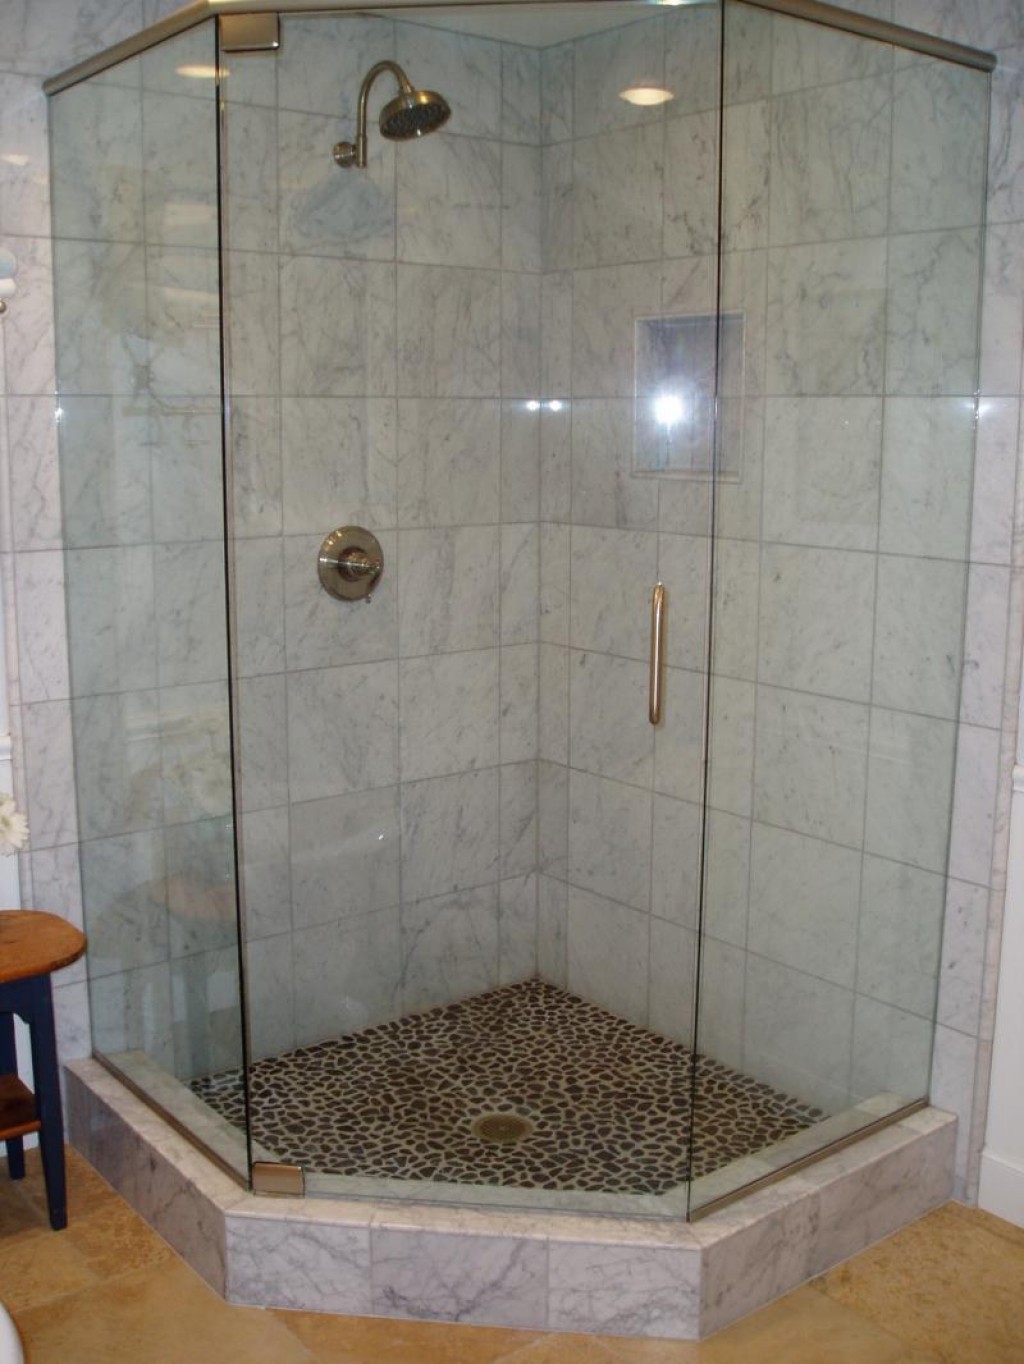 Как в ванной комнате сделать душевую: как сделать вариант без стенок в маленькой комнате, тонкости оформления